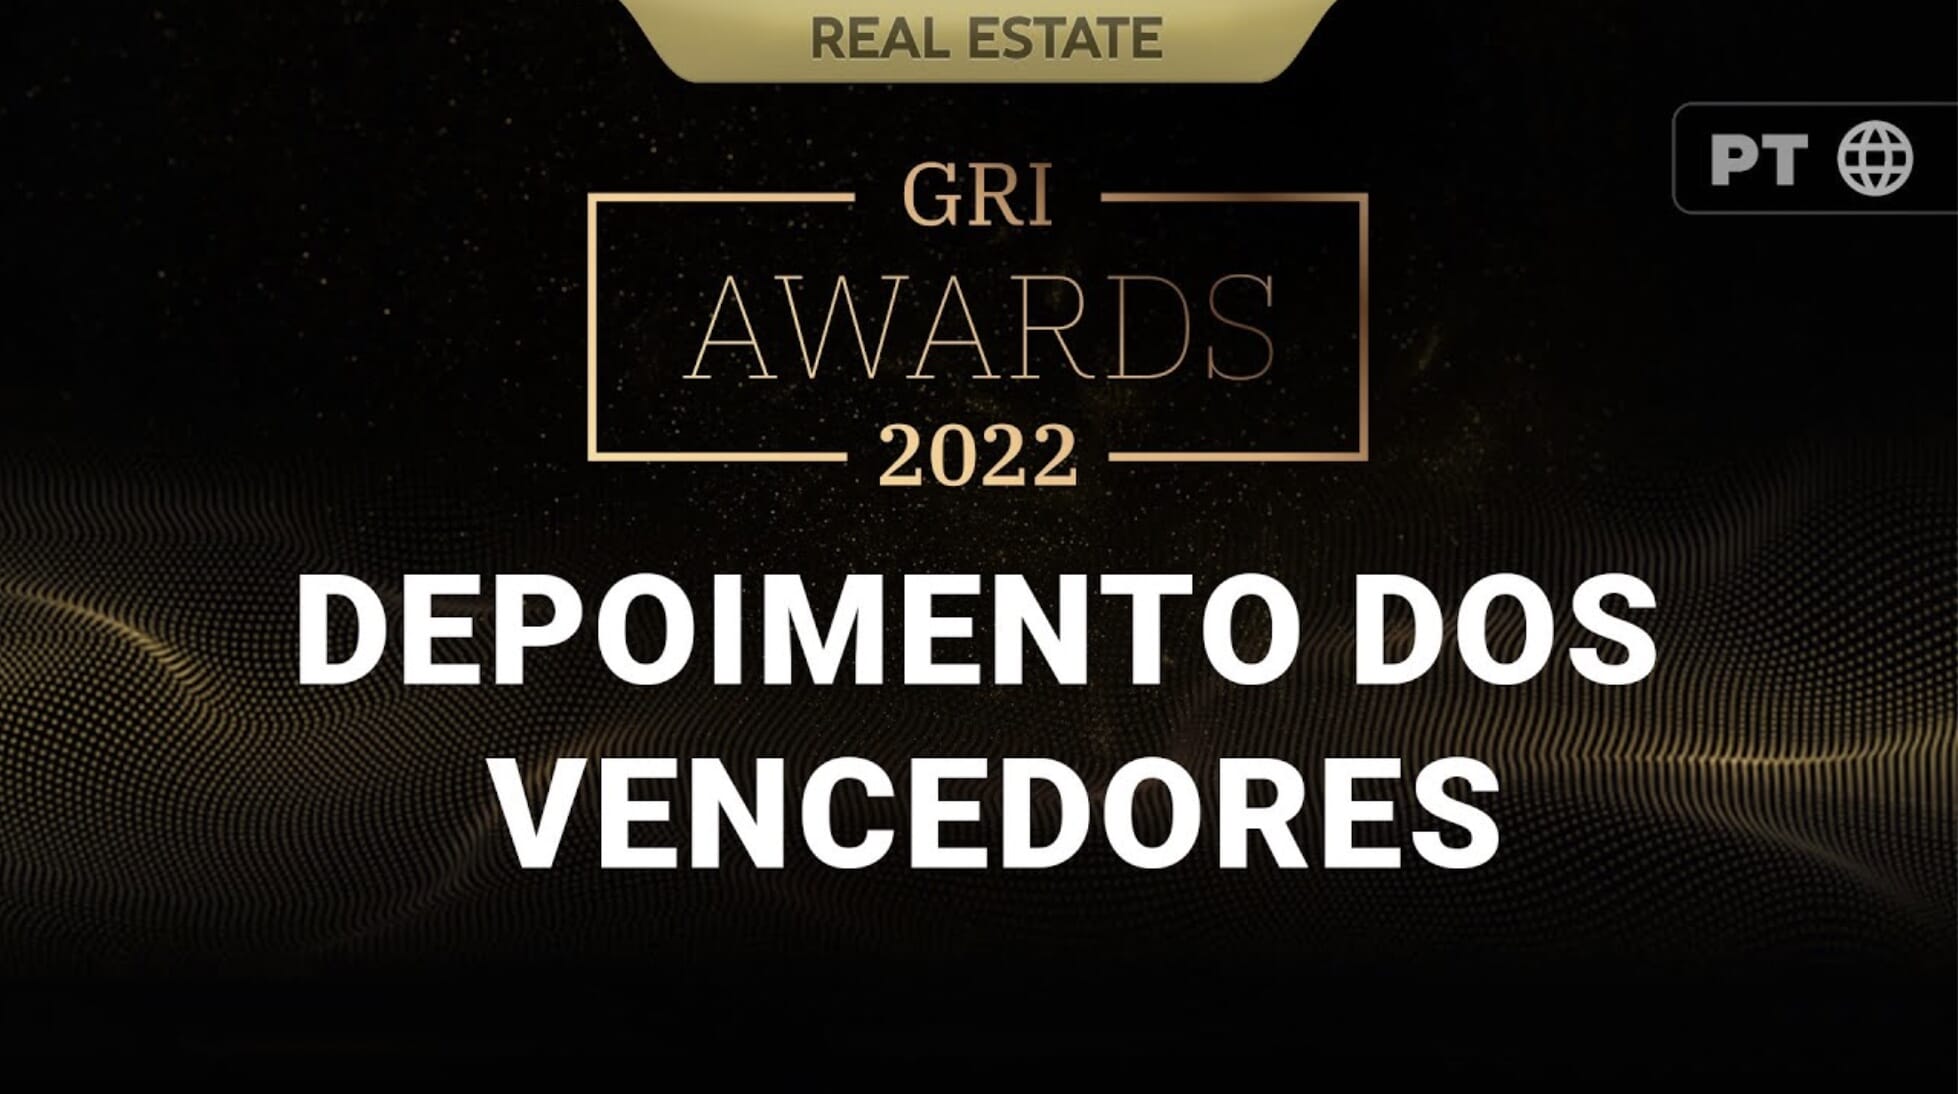 Vencedores do GRI Awards 2022